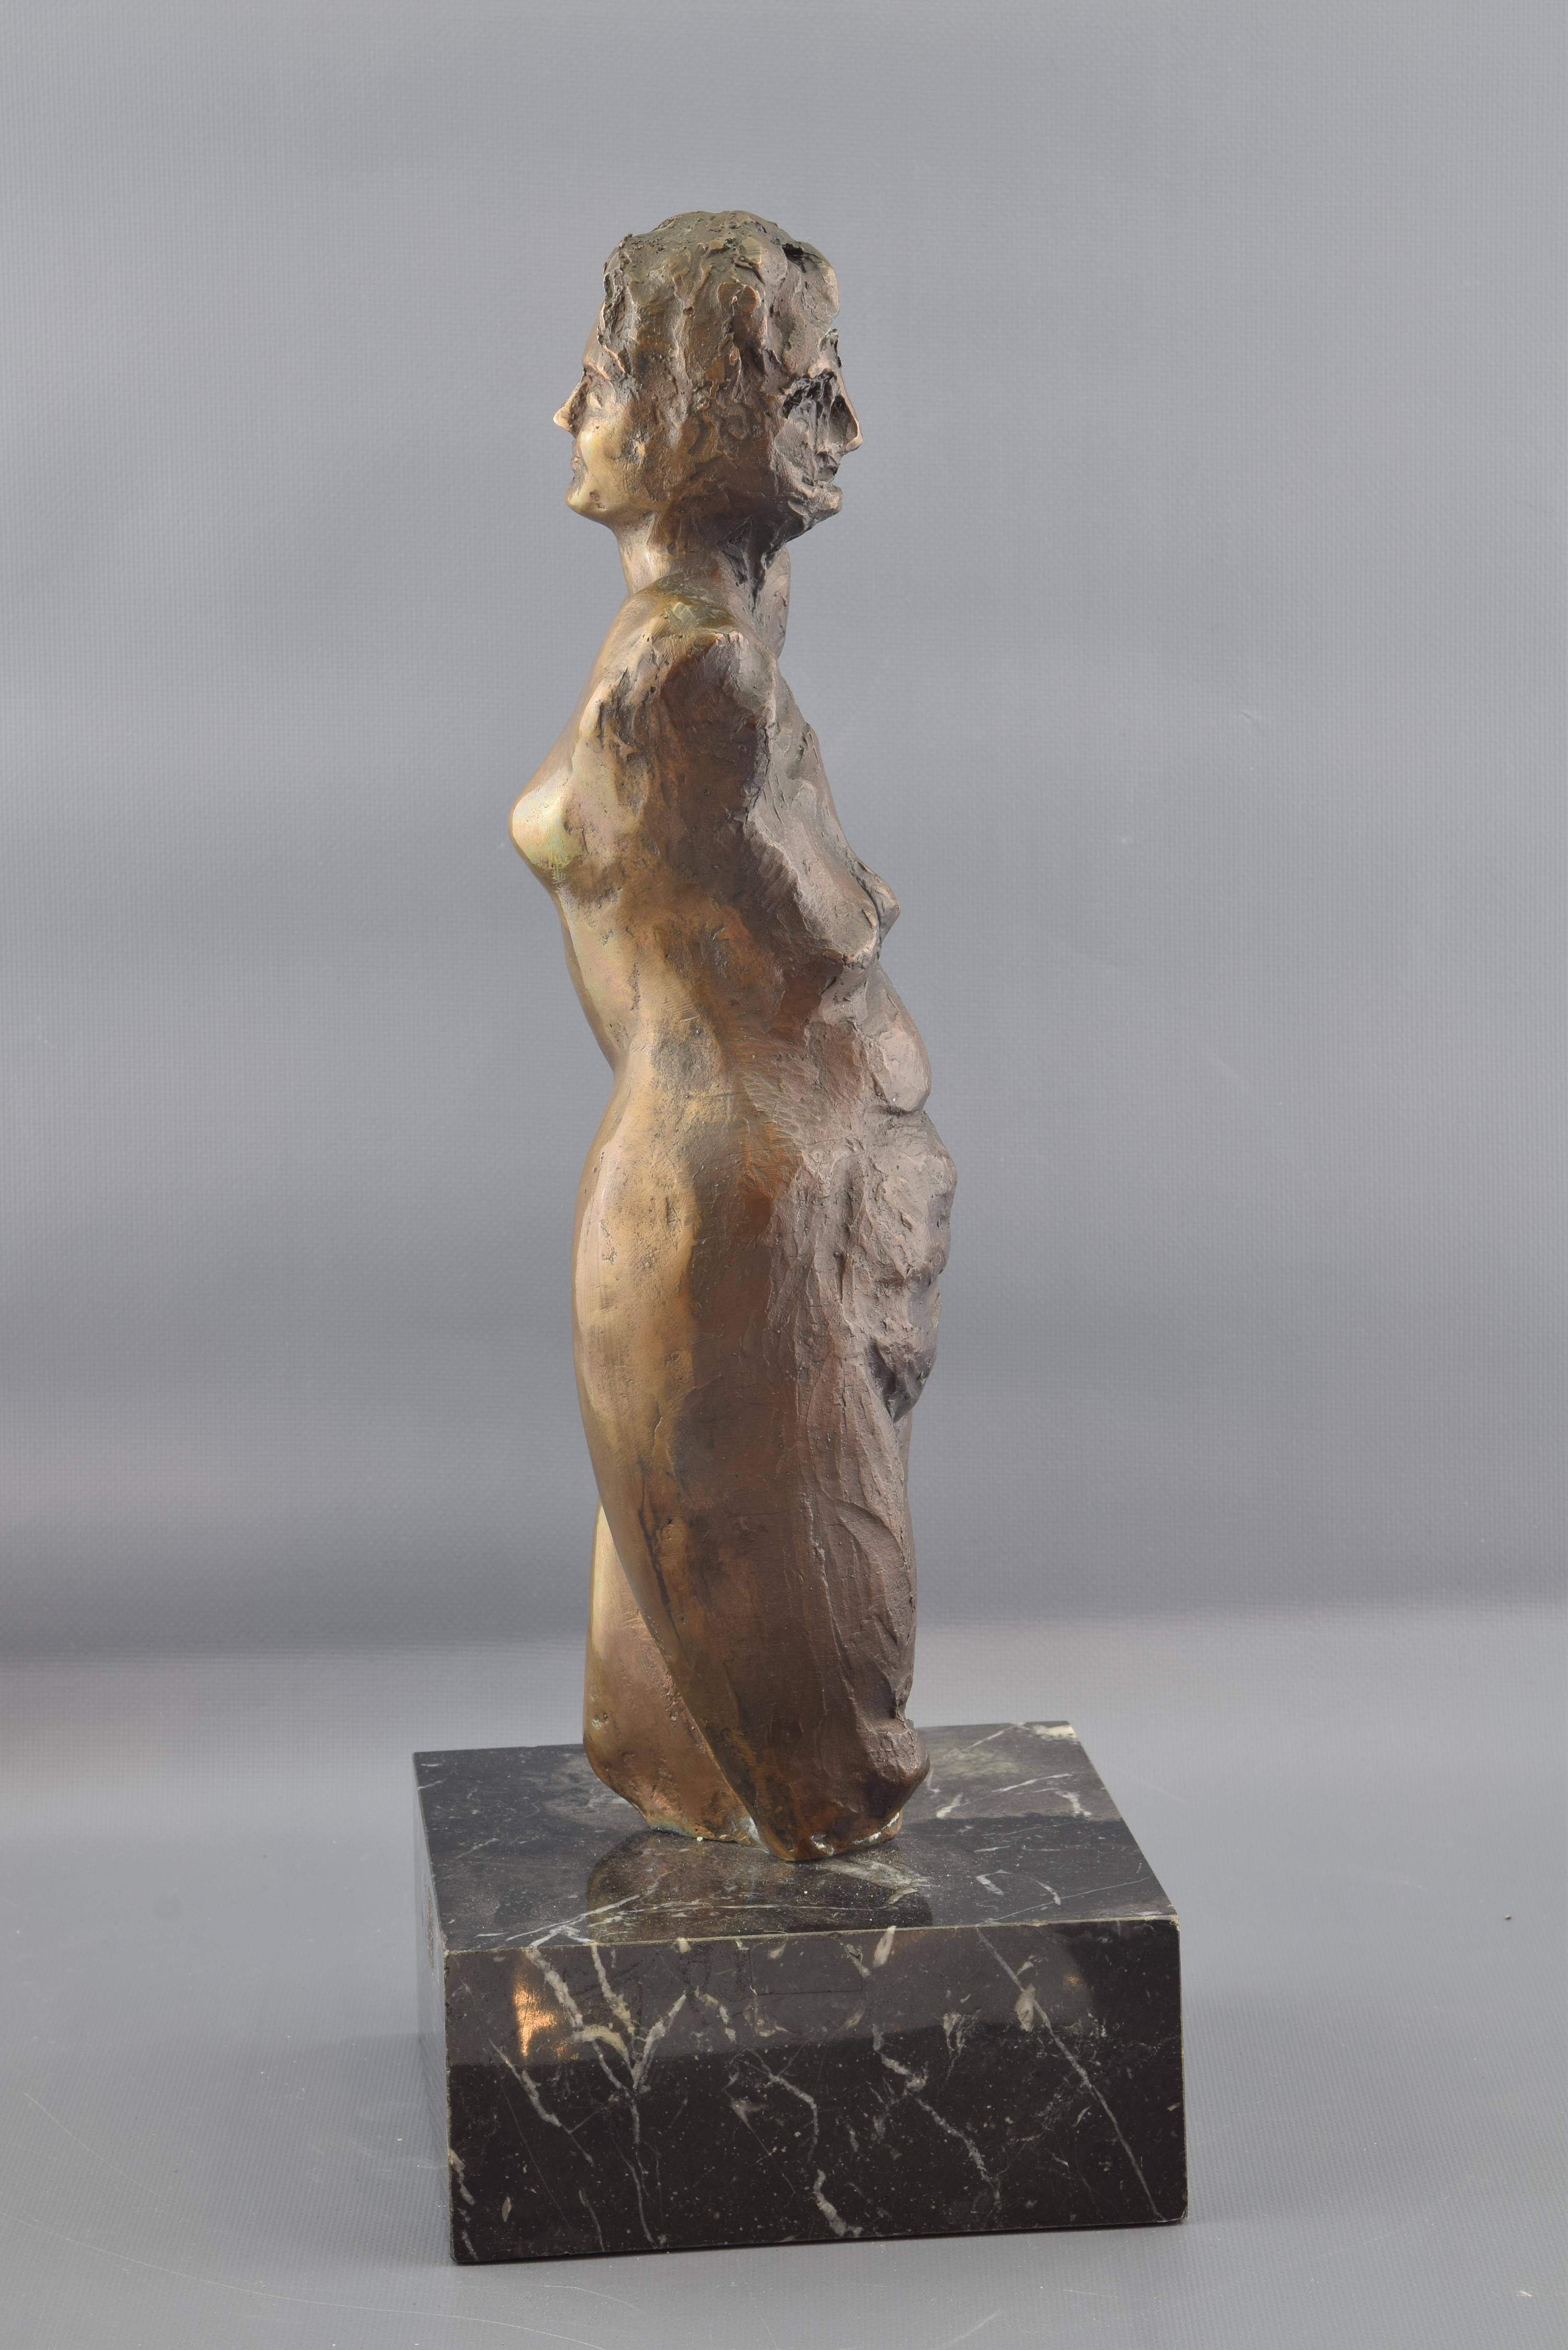 Signé et numéroté (1/6). VEIGA, Fernando (Madrid, 1943).
Sculpture féminine placée sur une base de pierre sombre, dans laquelle est représentée une jeune fille agenouillée vers le haut et sans bras (rappelant la Vénus de Milo, par exemple, et